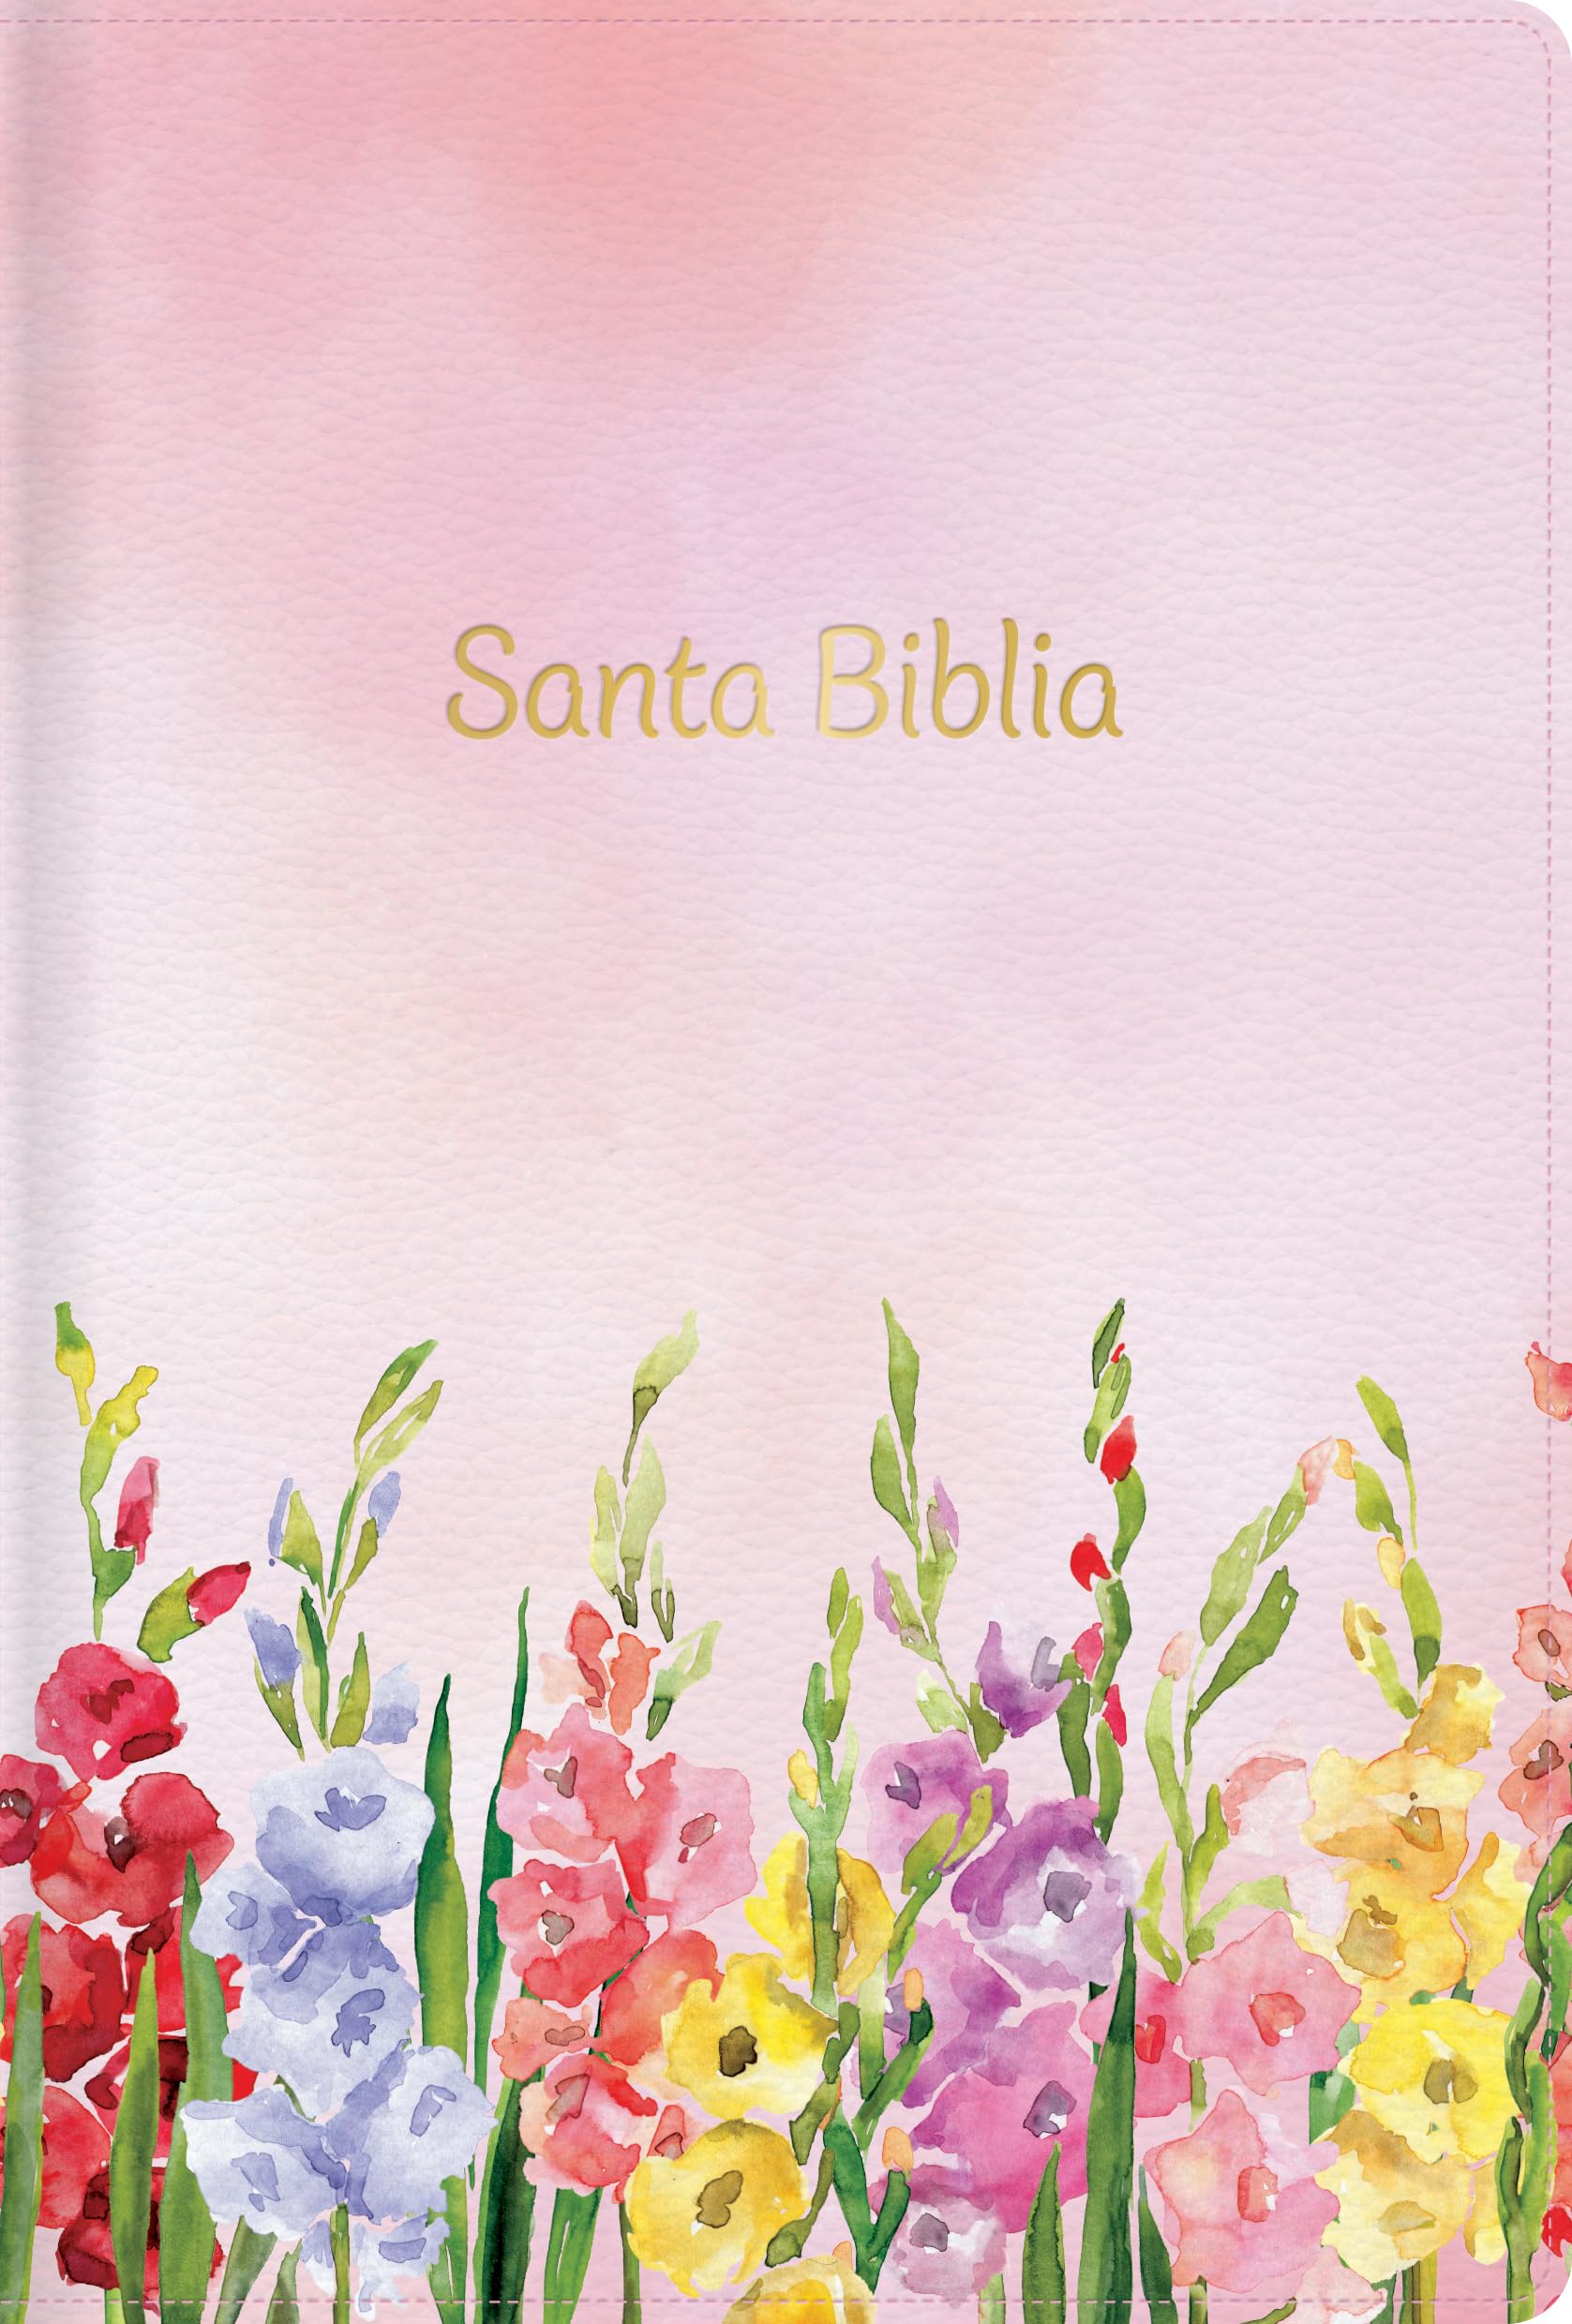 RVR 1960 Biblia letra grande tamaño manual edición especial, fucsia símil piel: Santa Biblia (Spanish Edition)